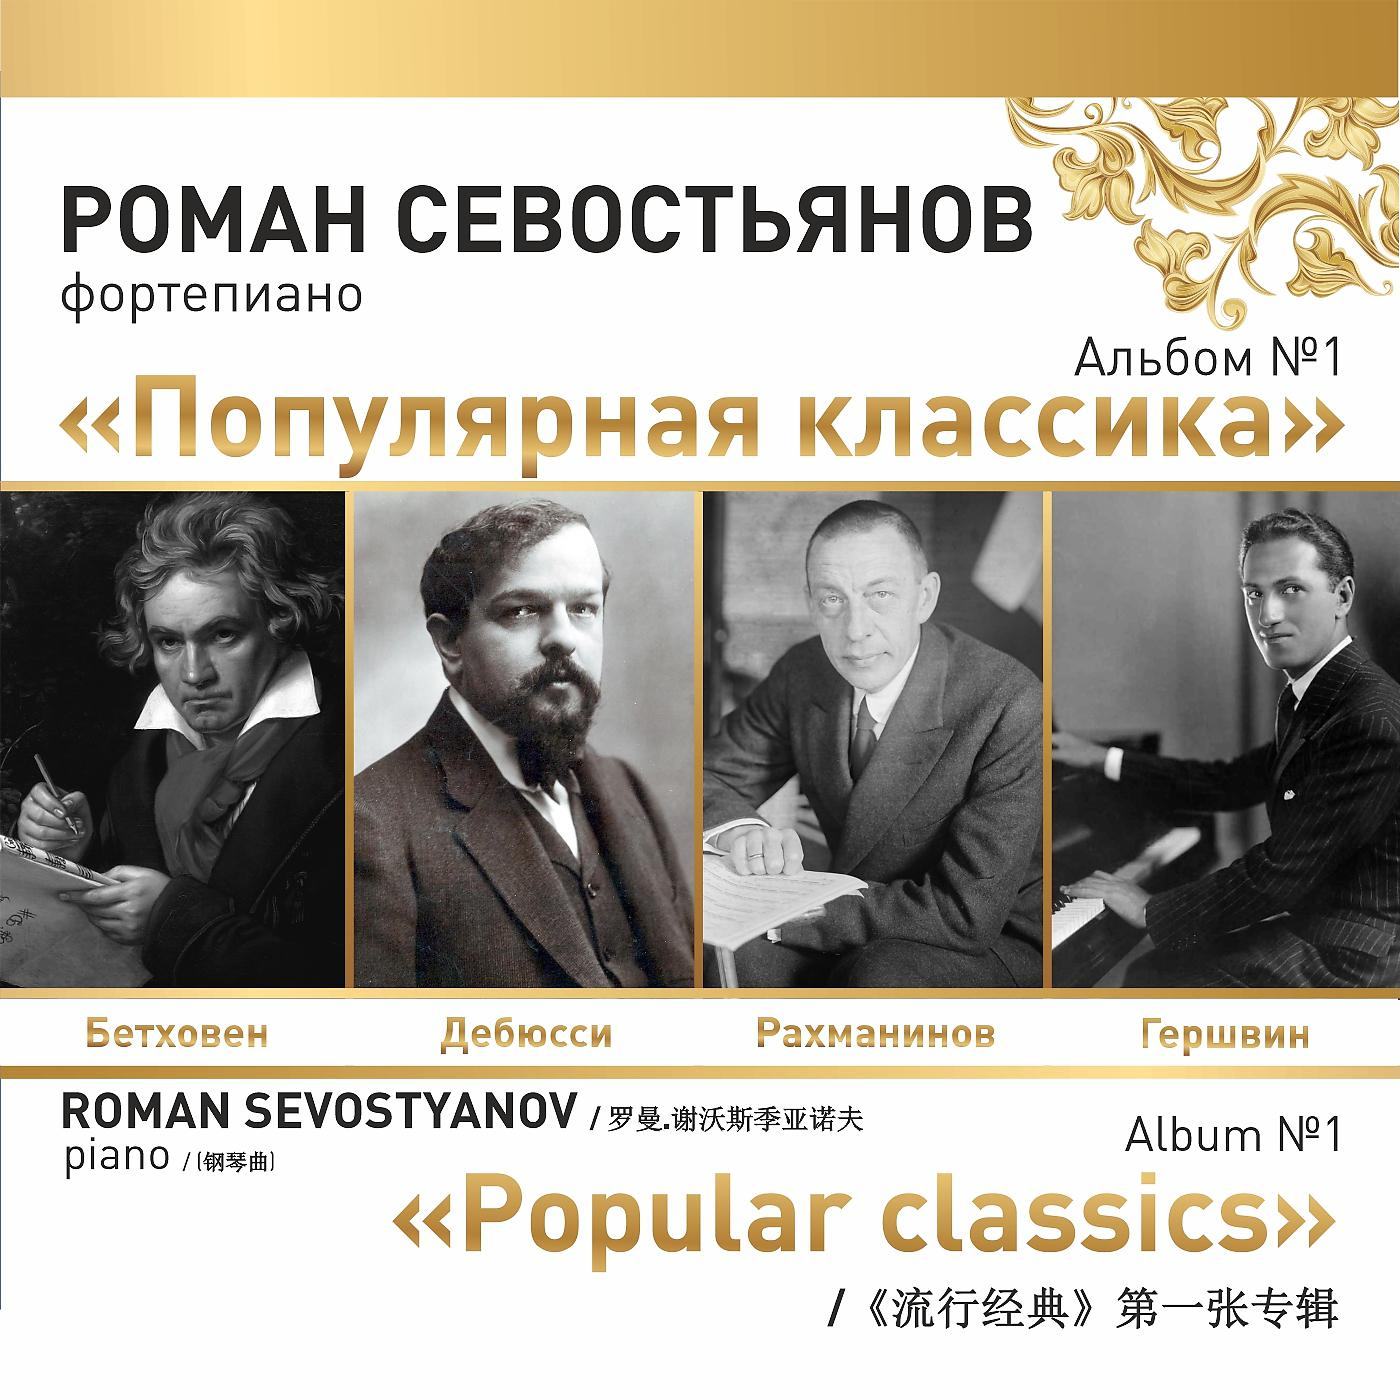 Постер альбома Альбом №1 "Популярная классика"